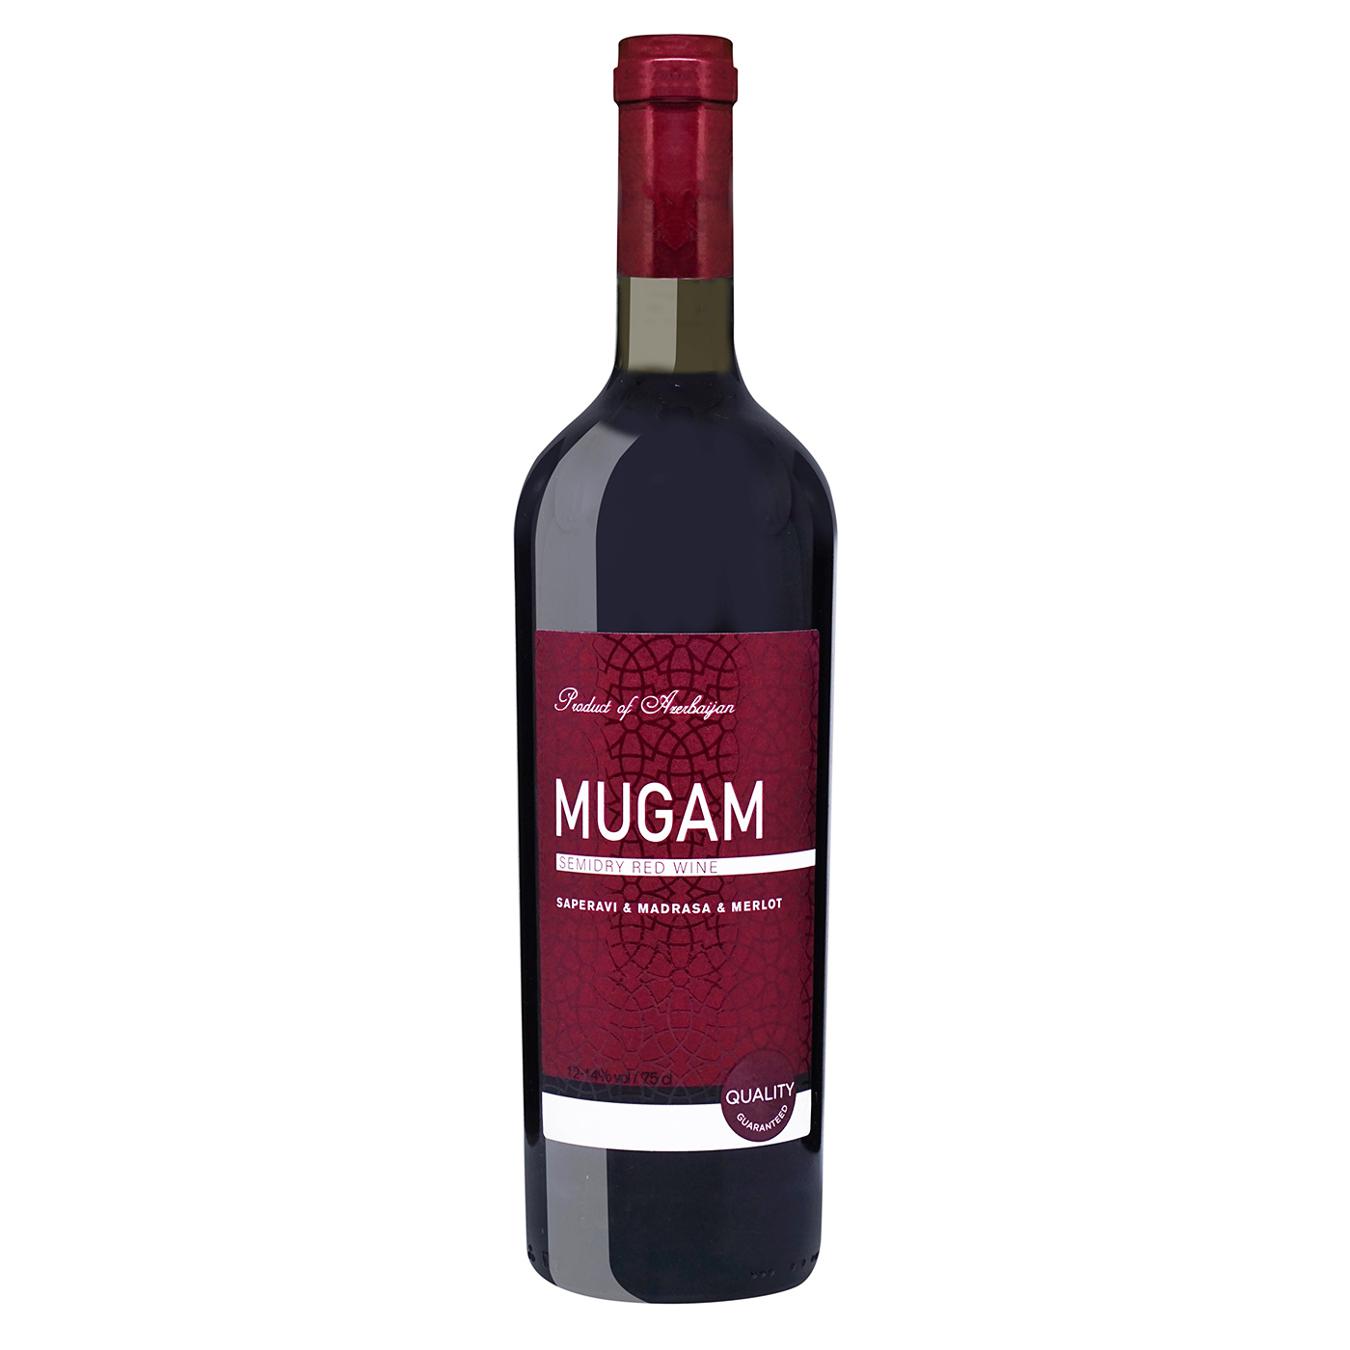 Вино Mugam червоне напівсухе 12-14% 0,75л